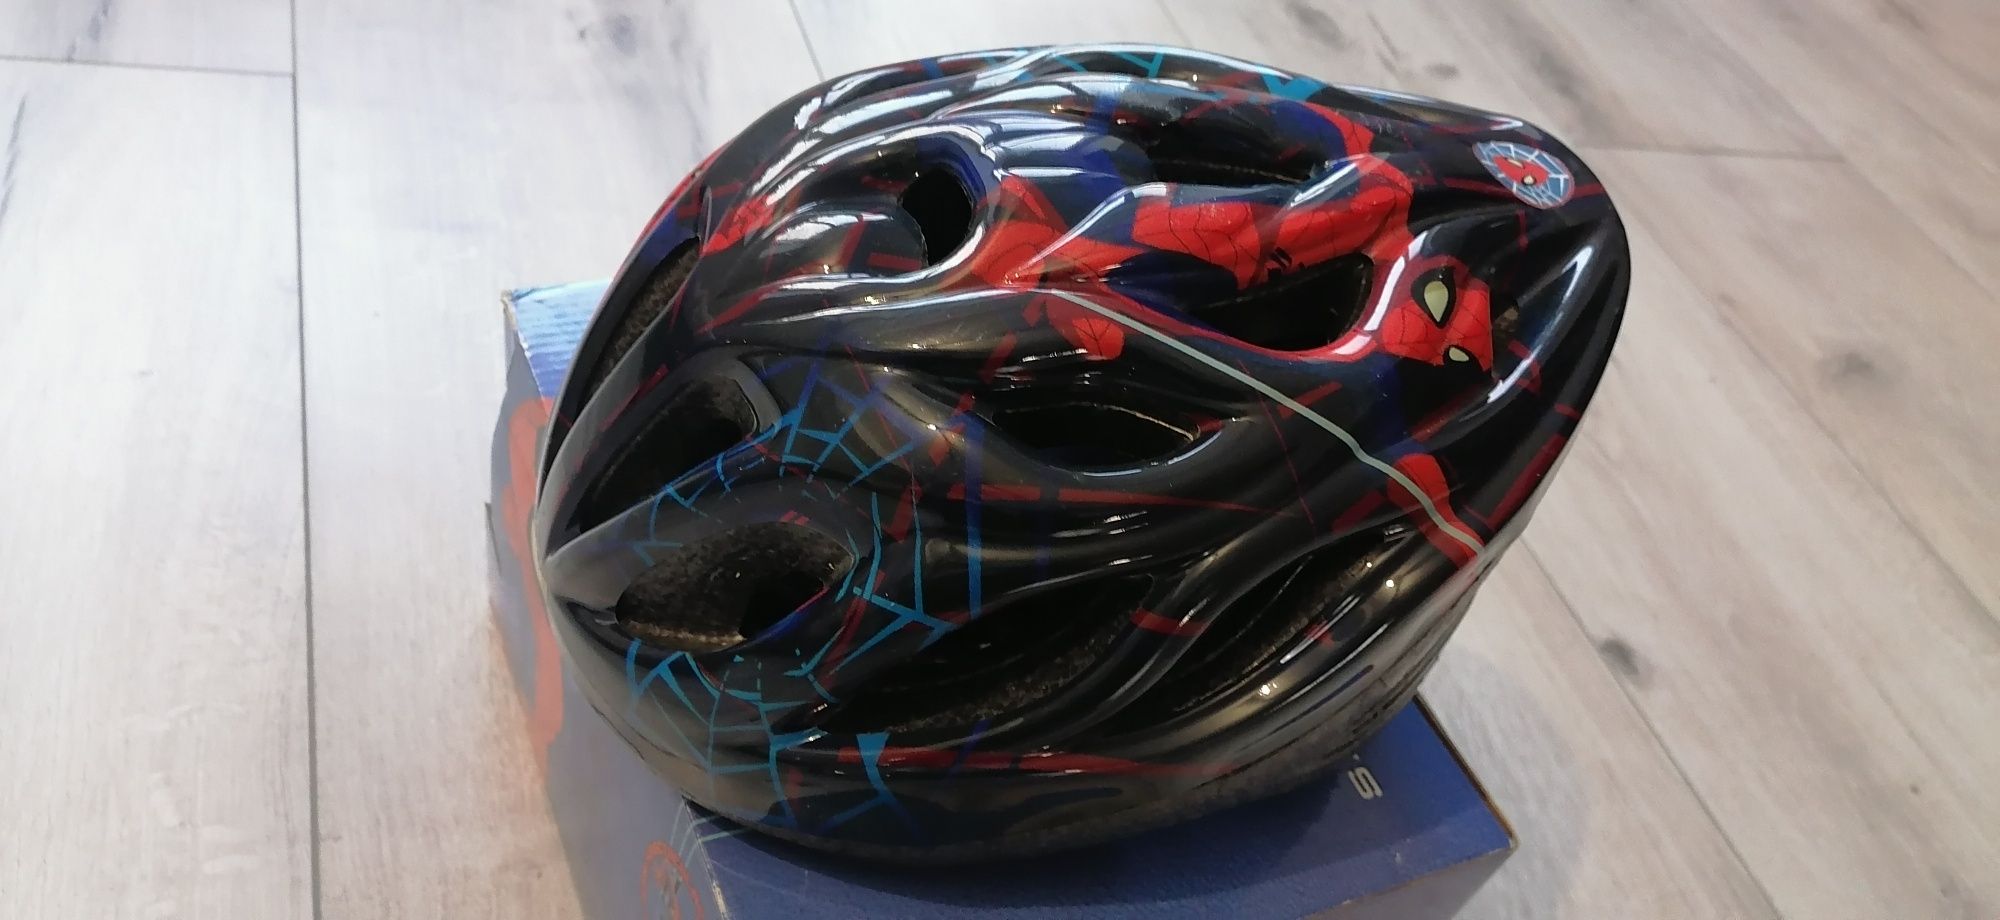 Kask Safety helmet na rower, deskorolek, wrotek.